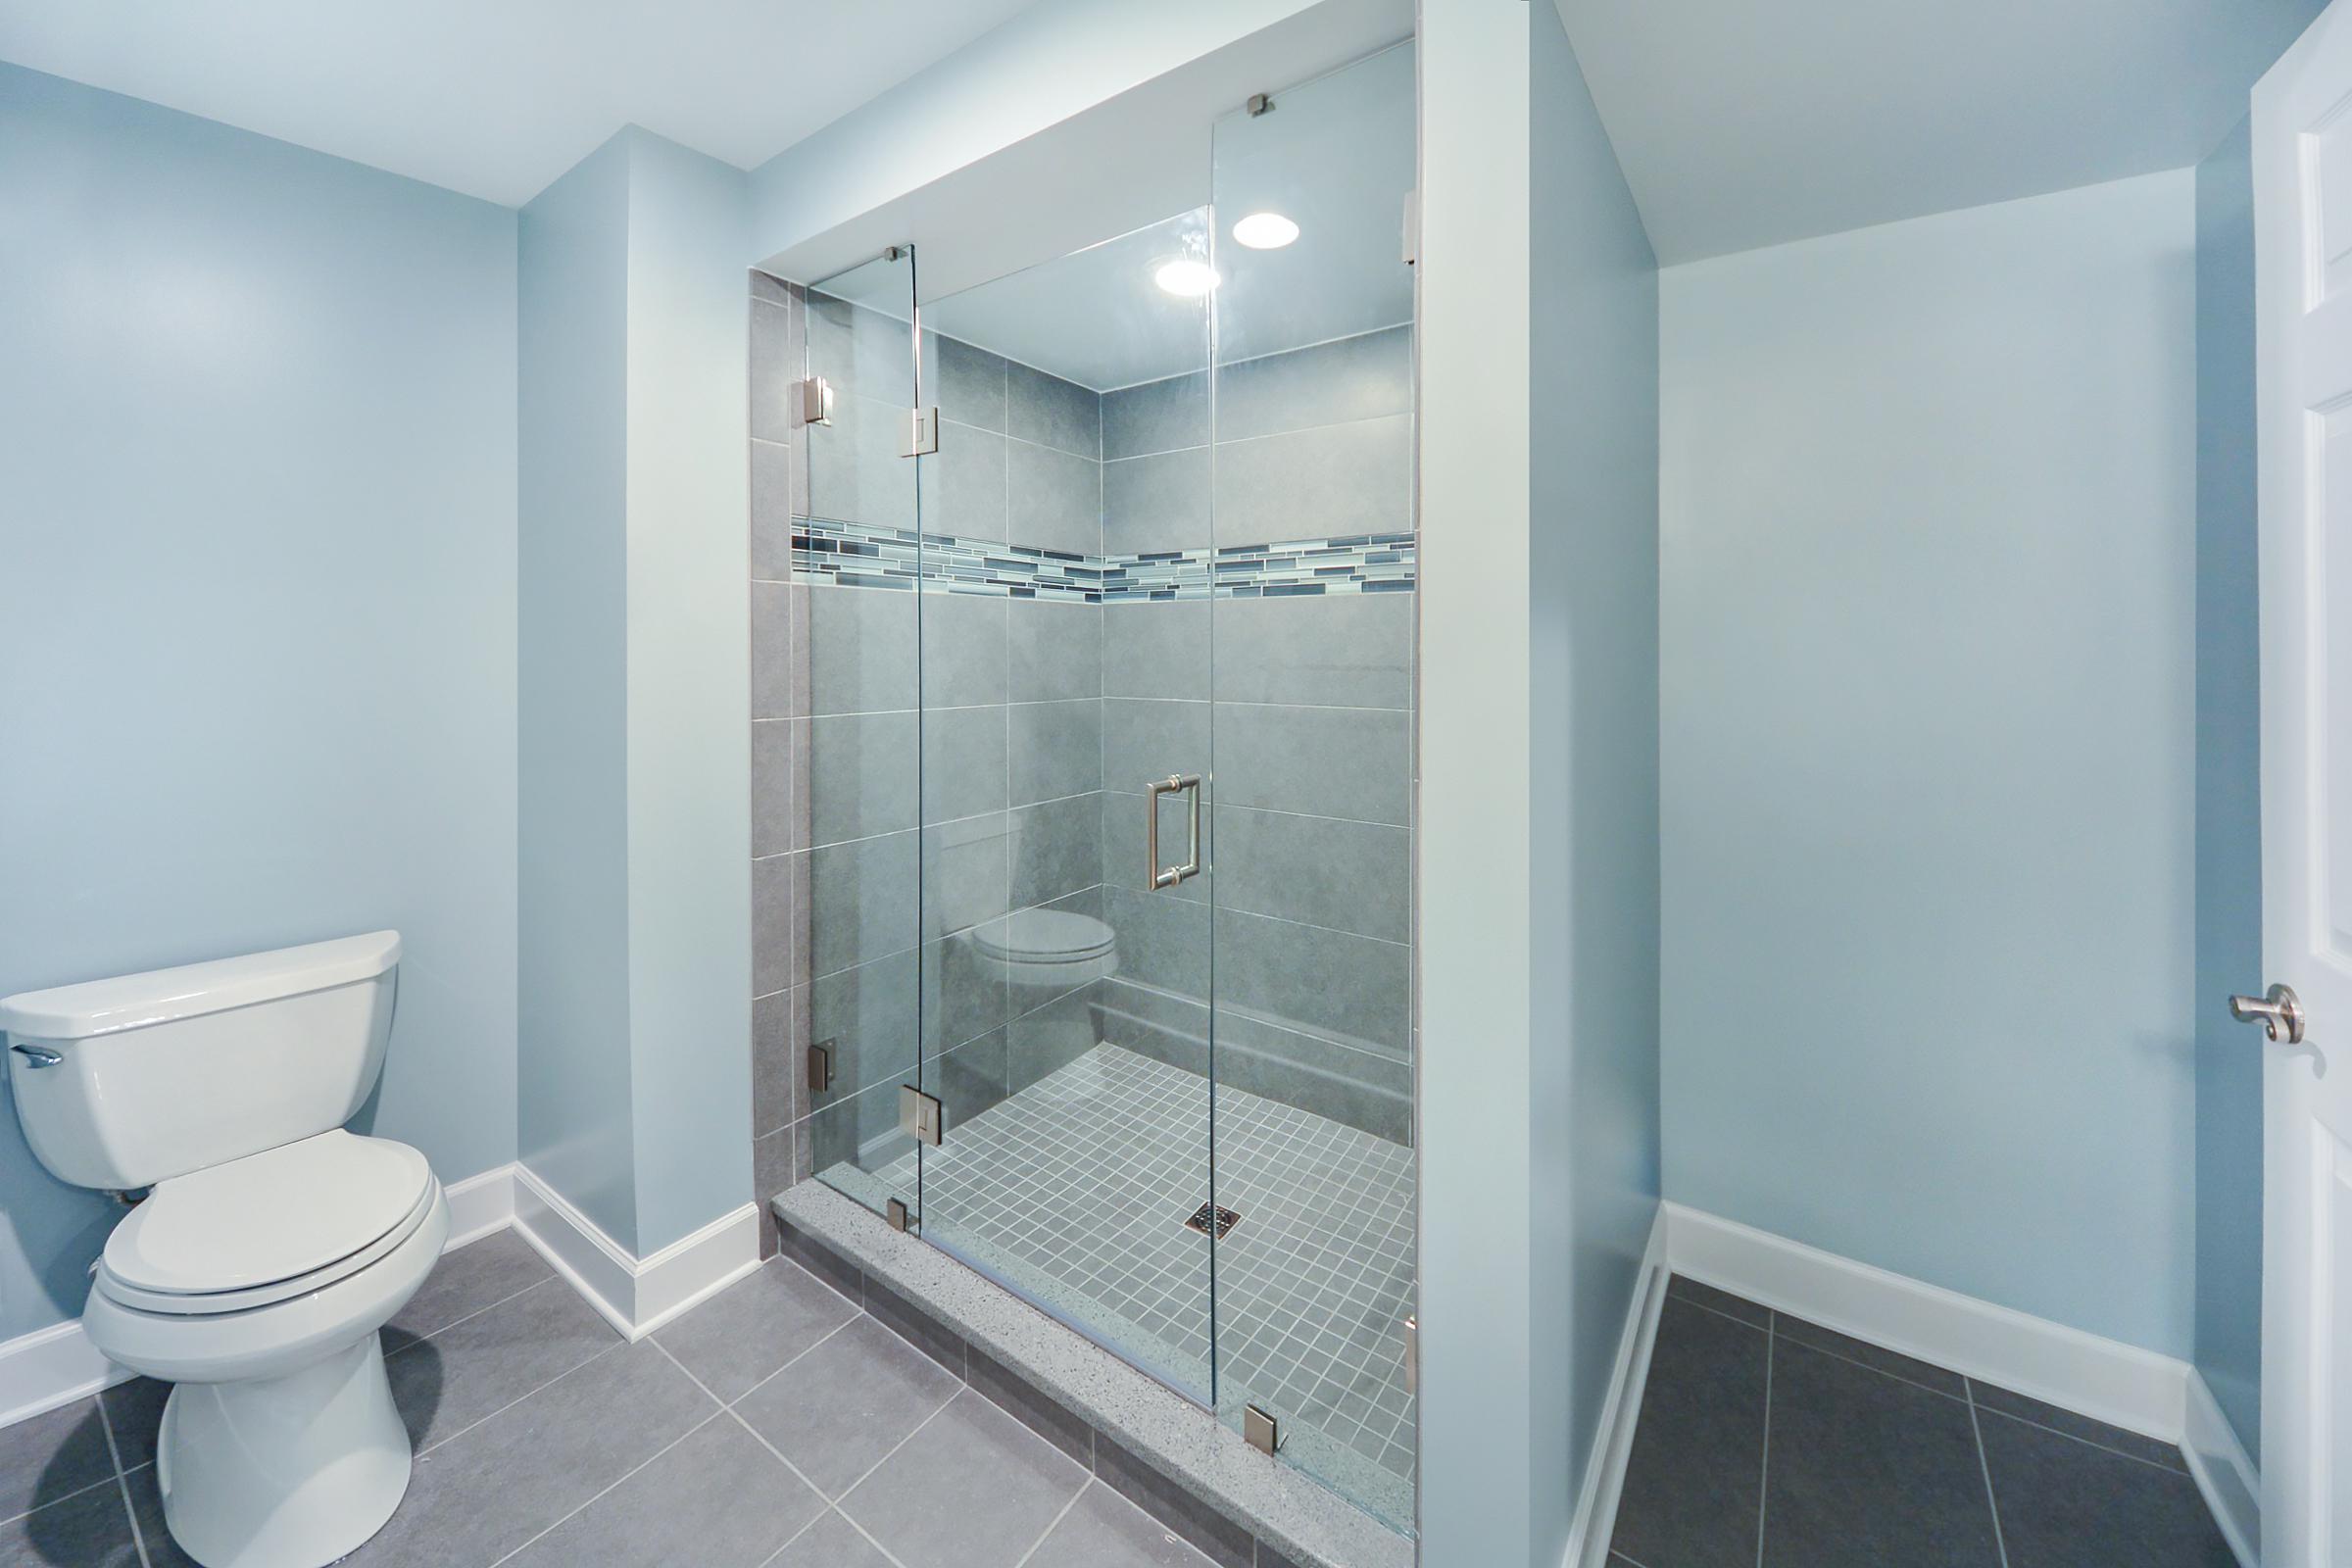 Bathroom Remodels Basement Remodeling, Basement Bathroom Renovation Costs